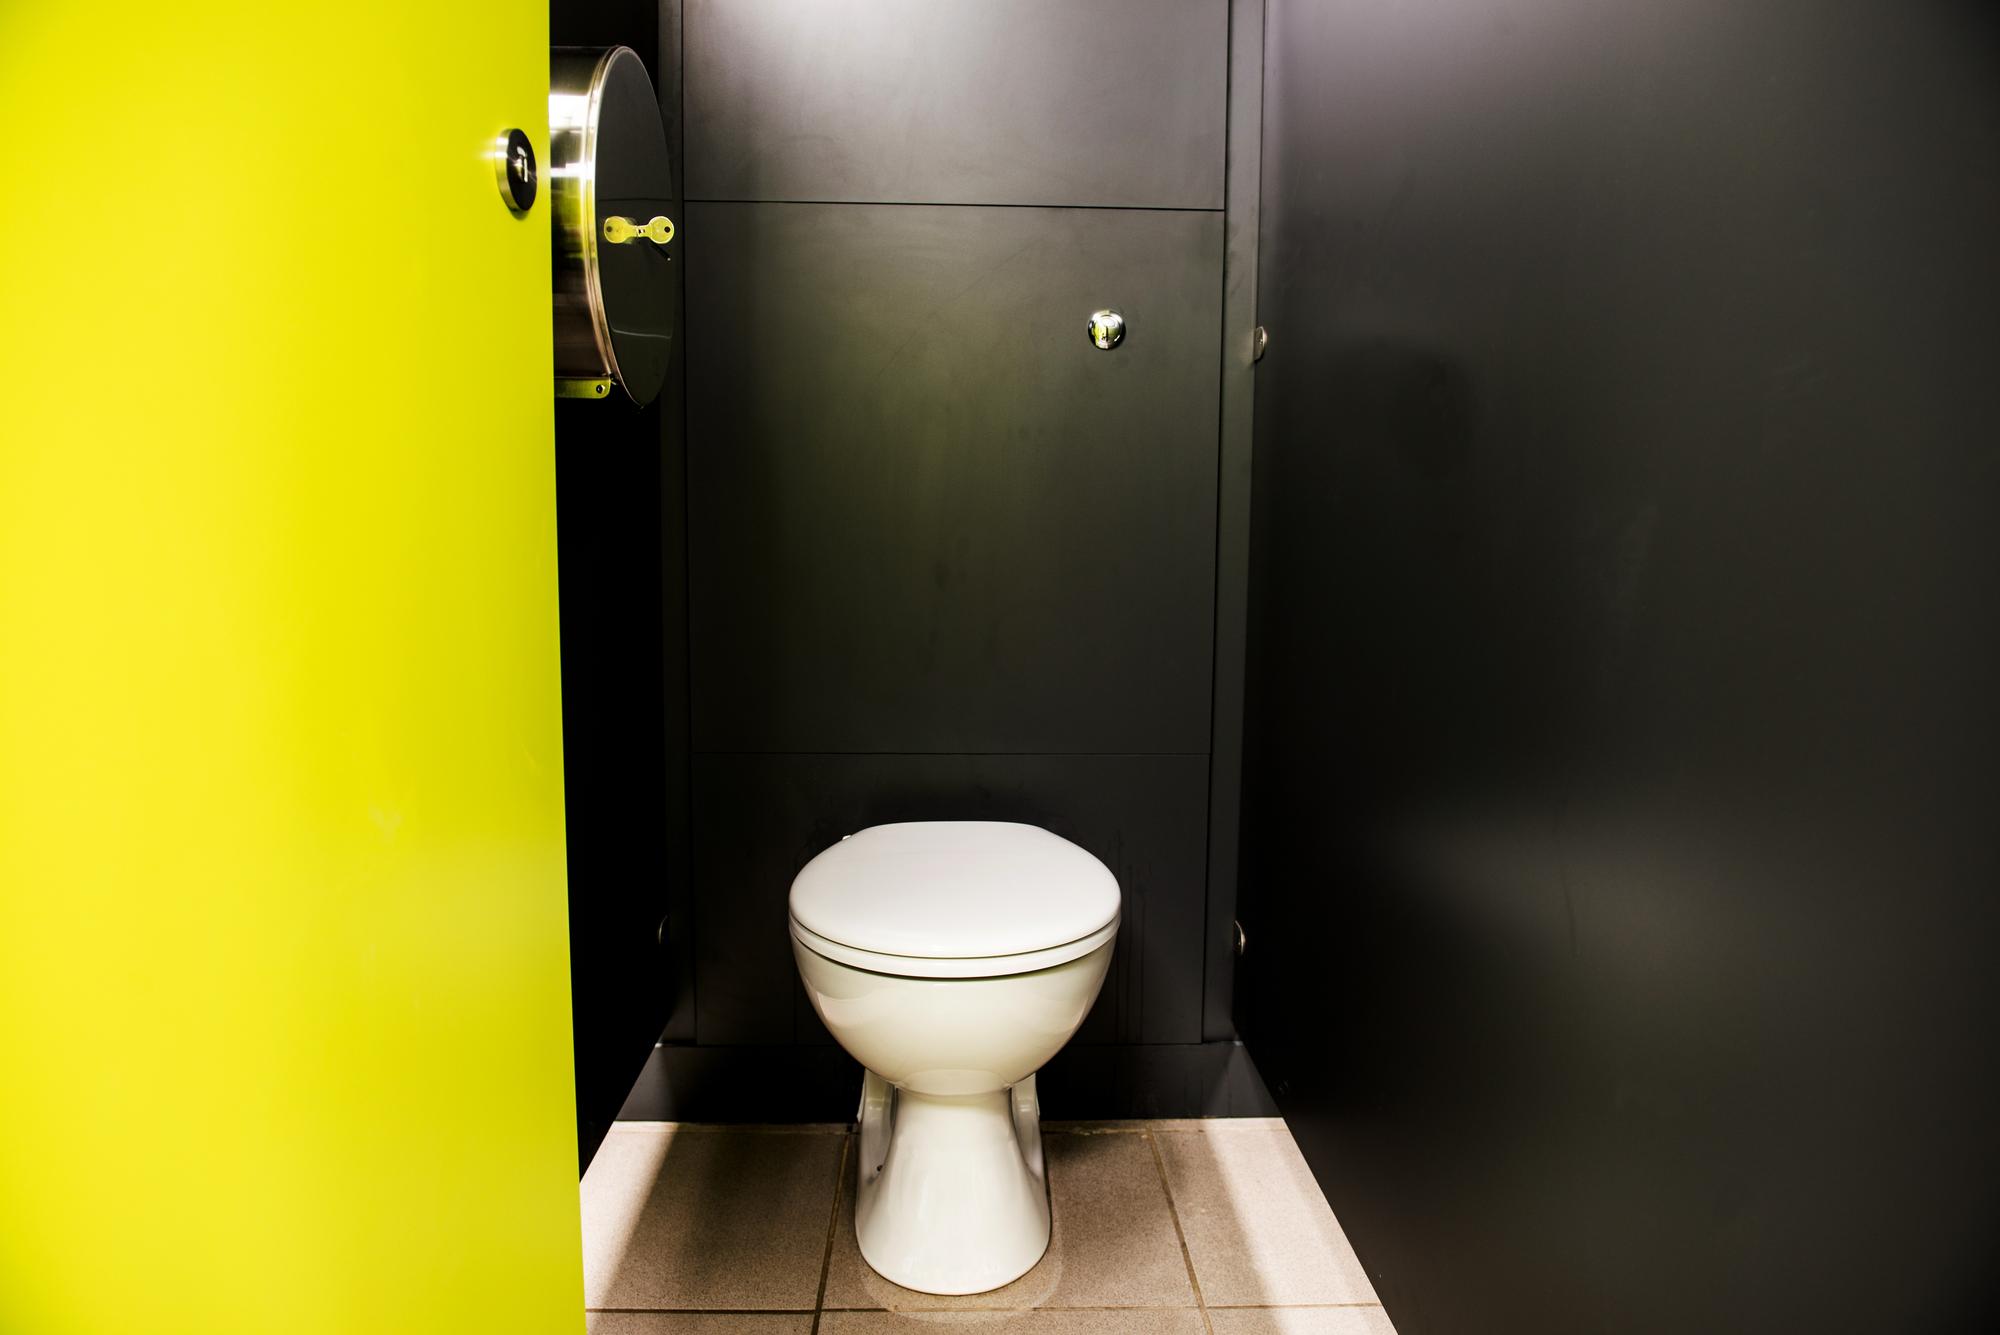 Toilet cubicle inside a theme park toilet room.